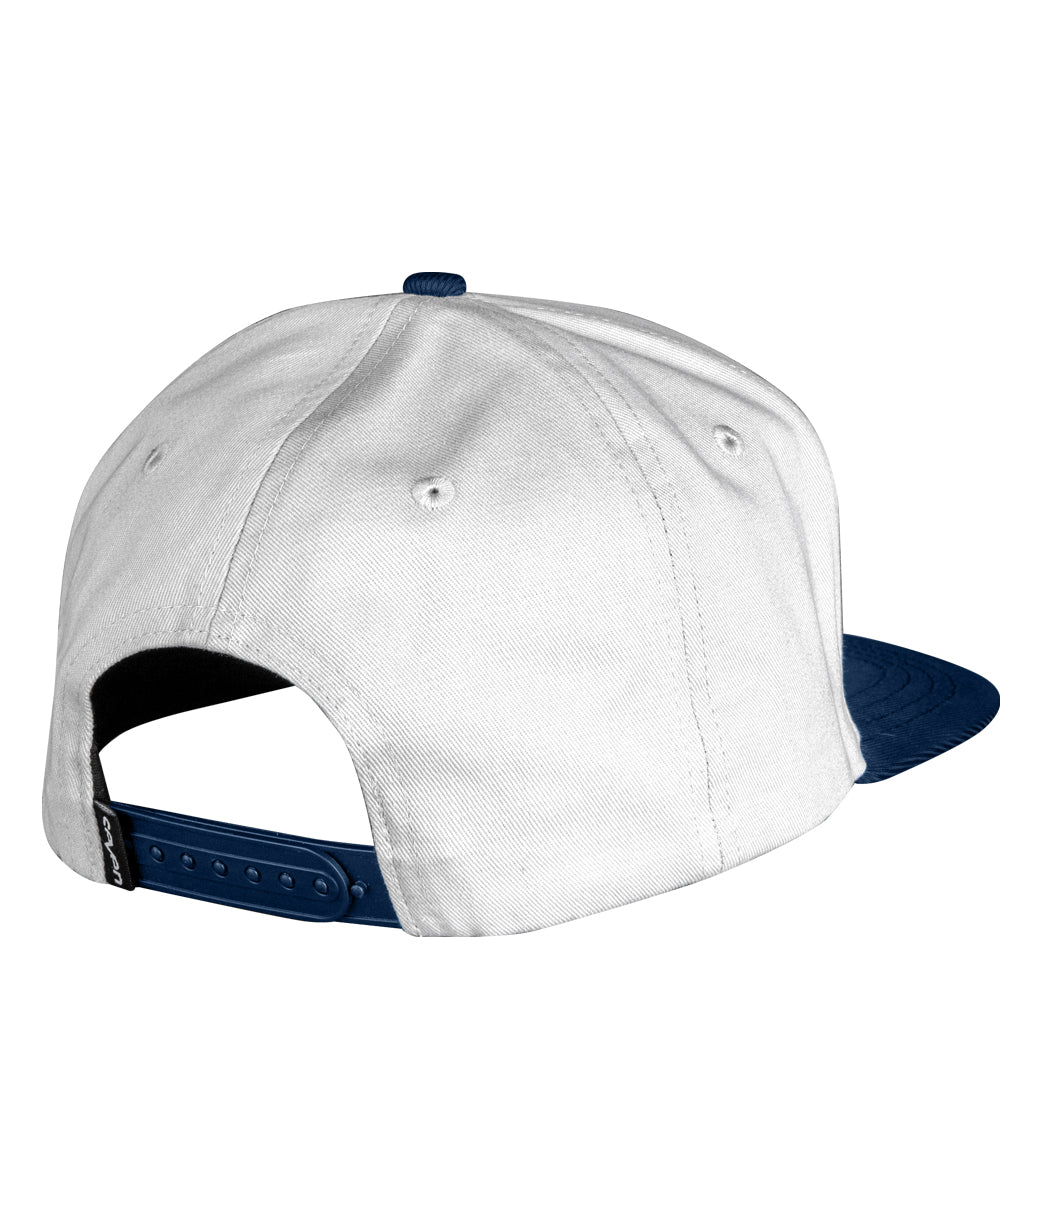 Micro Brand Hat White/Navy